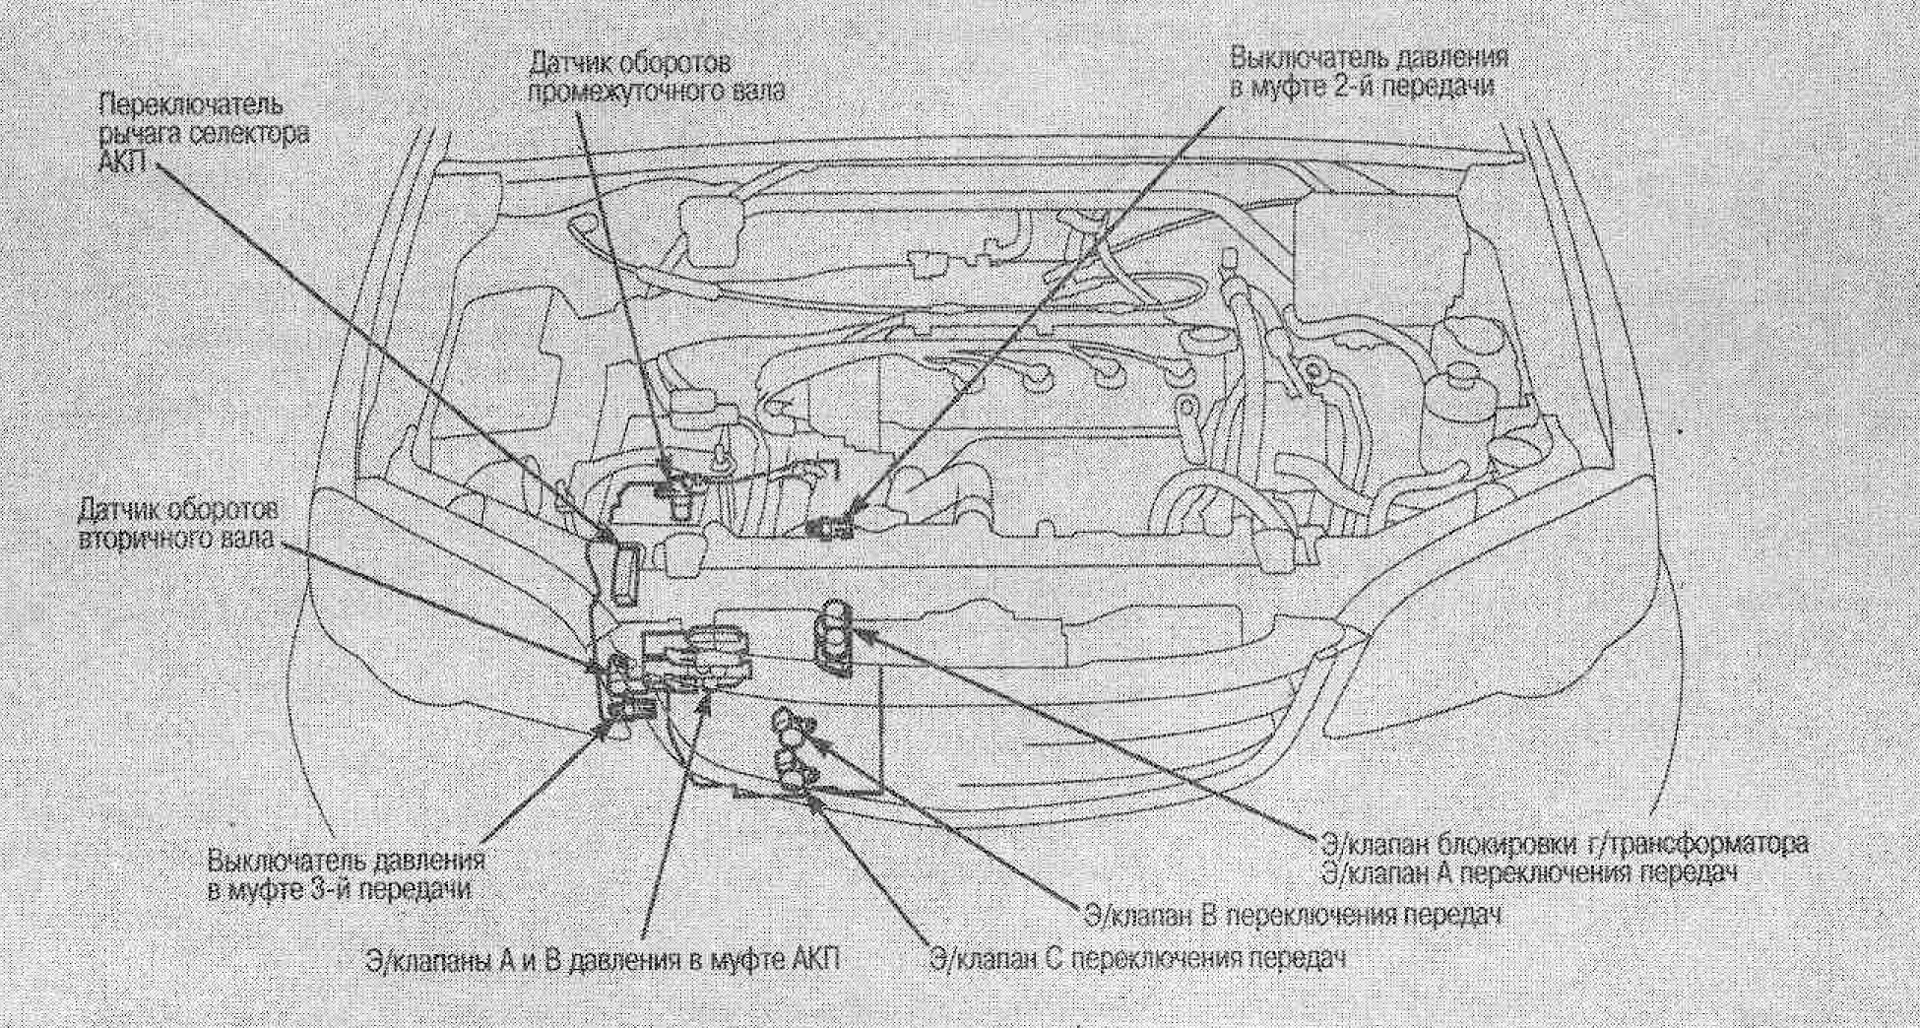 Honda stream датчики. Honda Civic 2002 датчик селектора АКПП. Датчик скорости Хонда стрим1.7. Хонда джаз 2003 датчики расположение. Схема двигателя Хонда Аккорд 7.